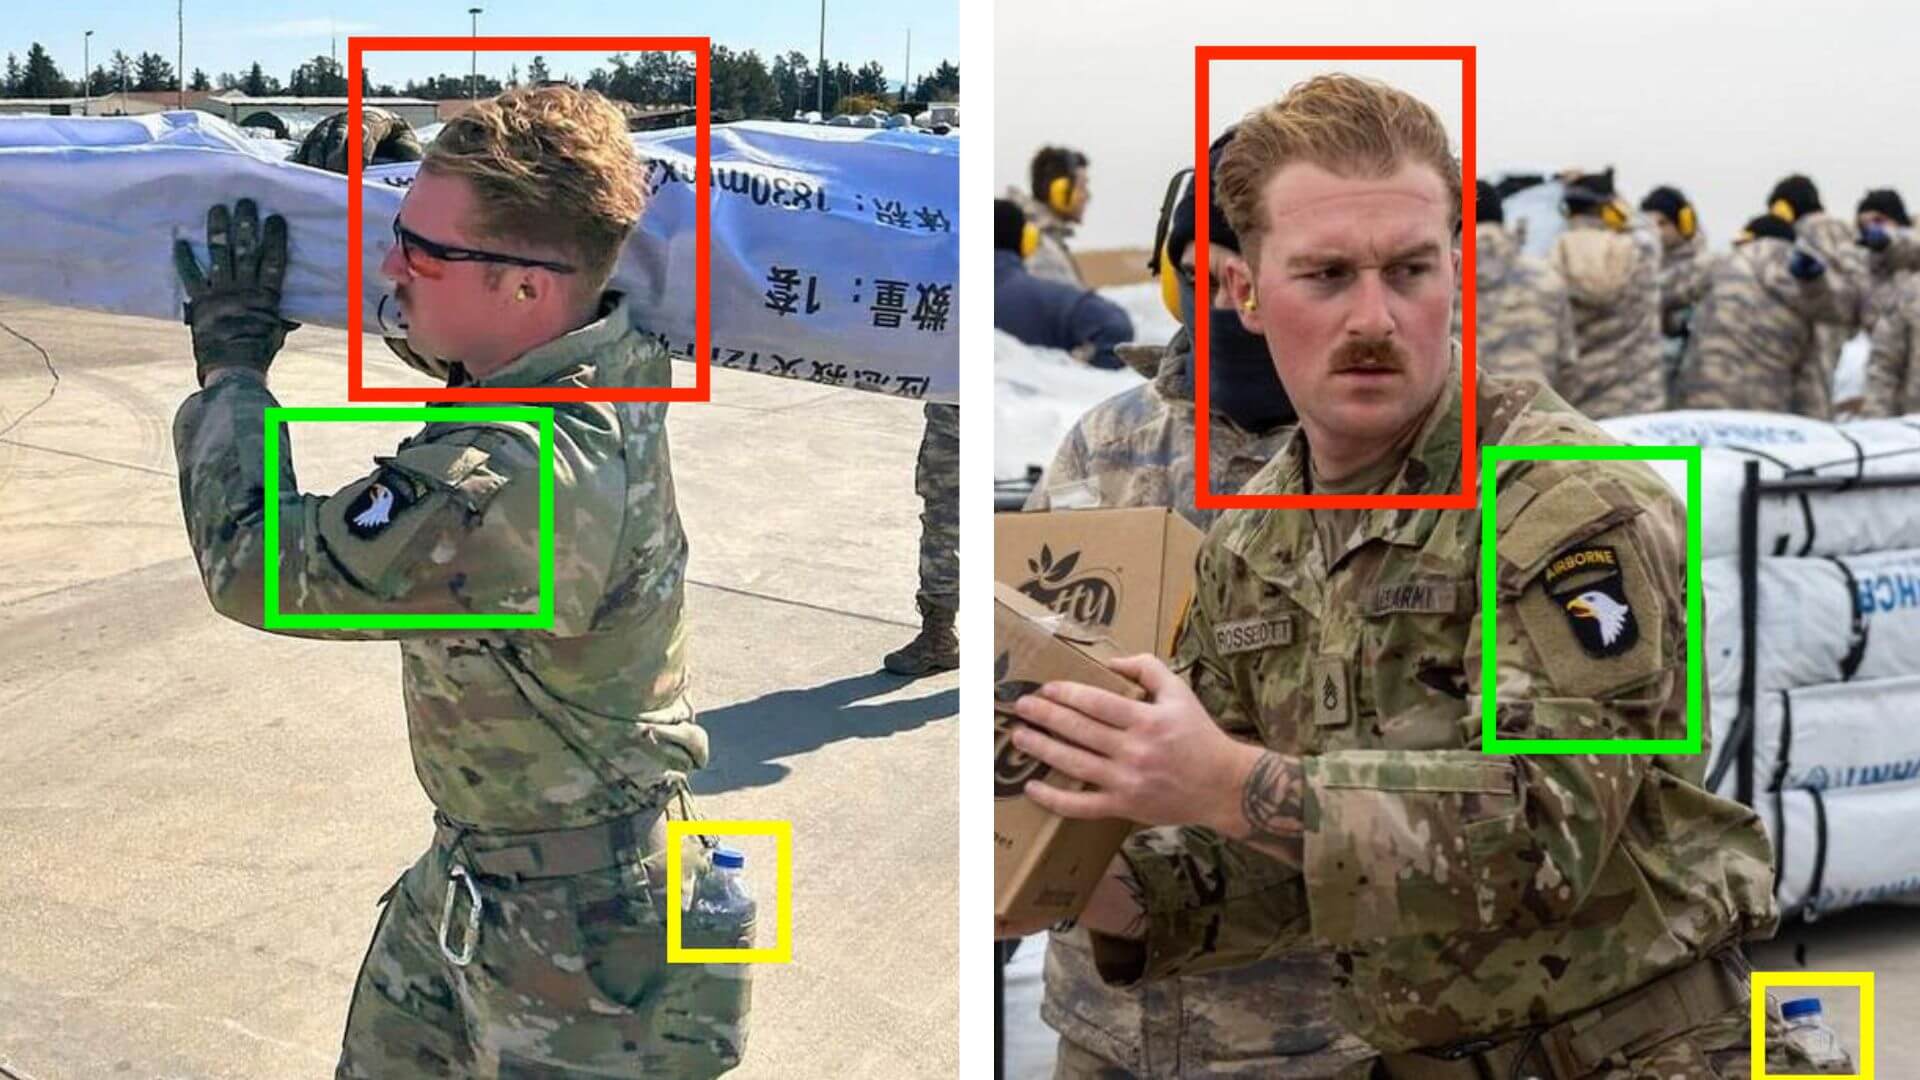 Vergleich der zwei Bilder des Soldaten mit Markierungen